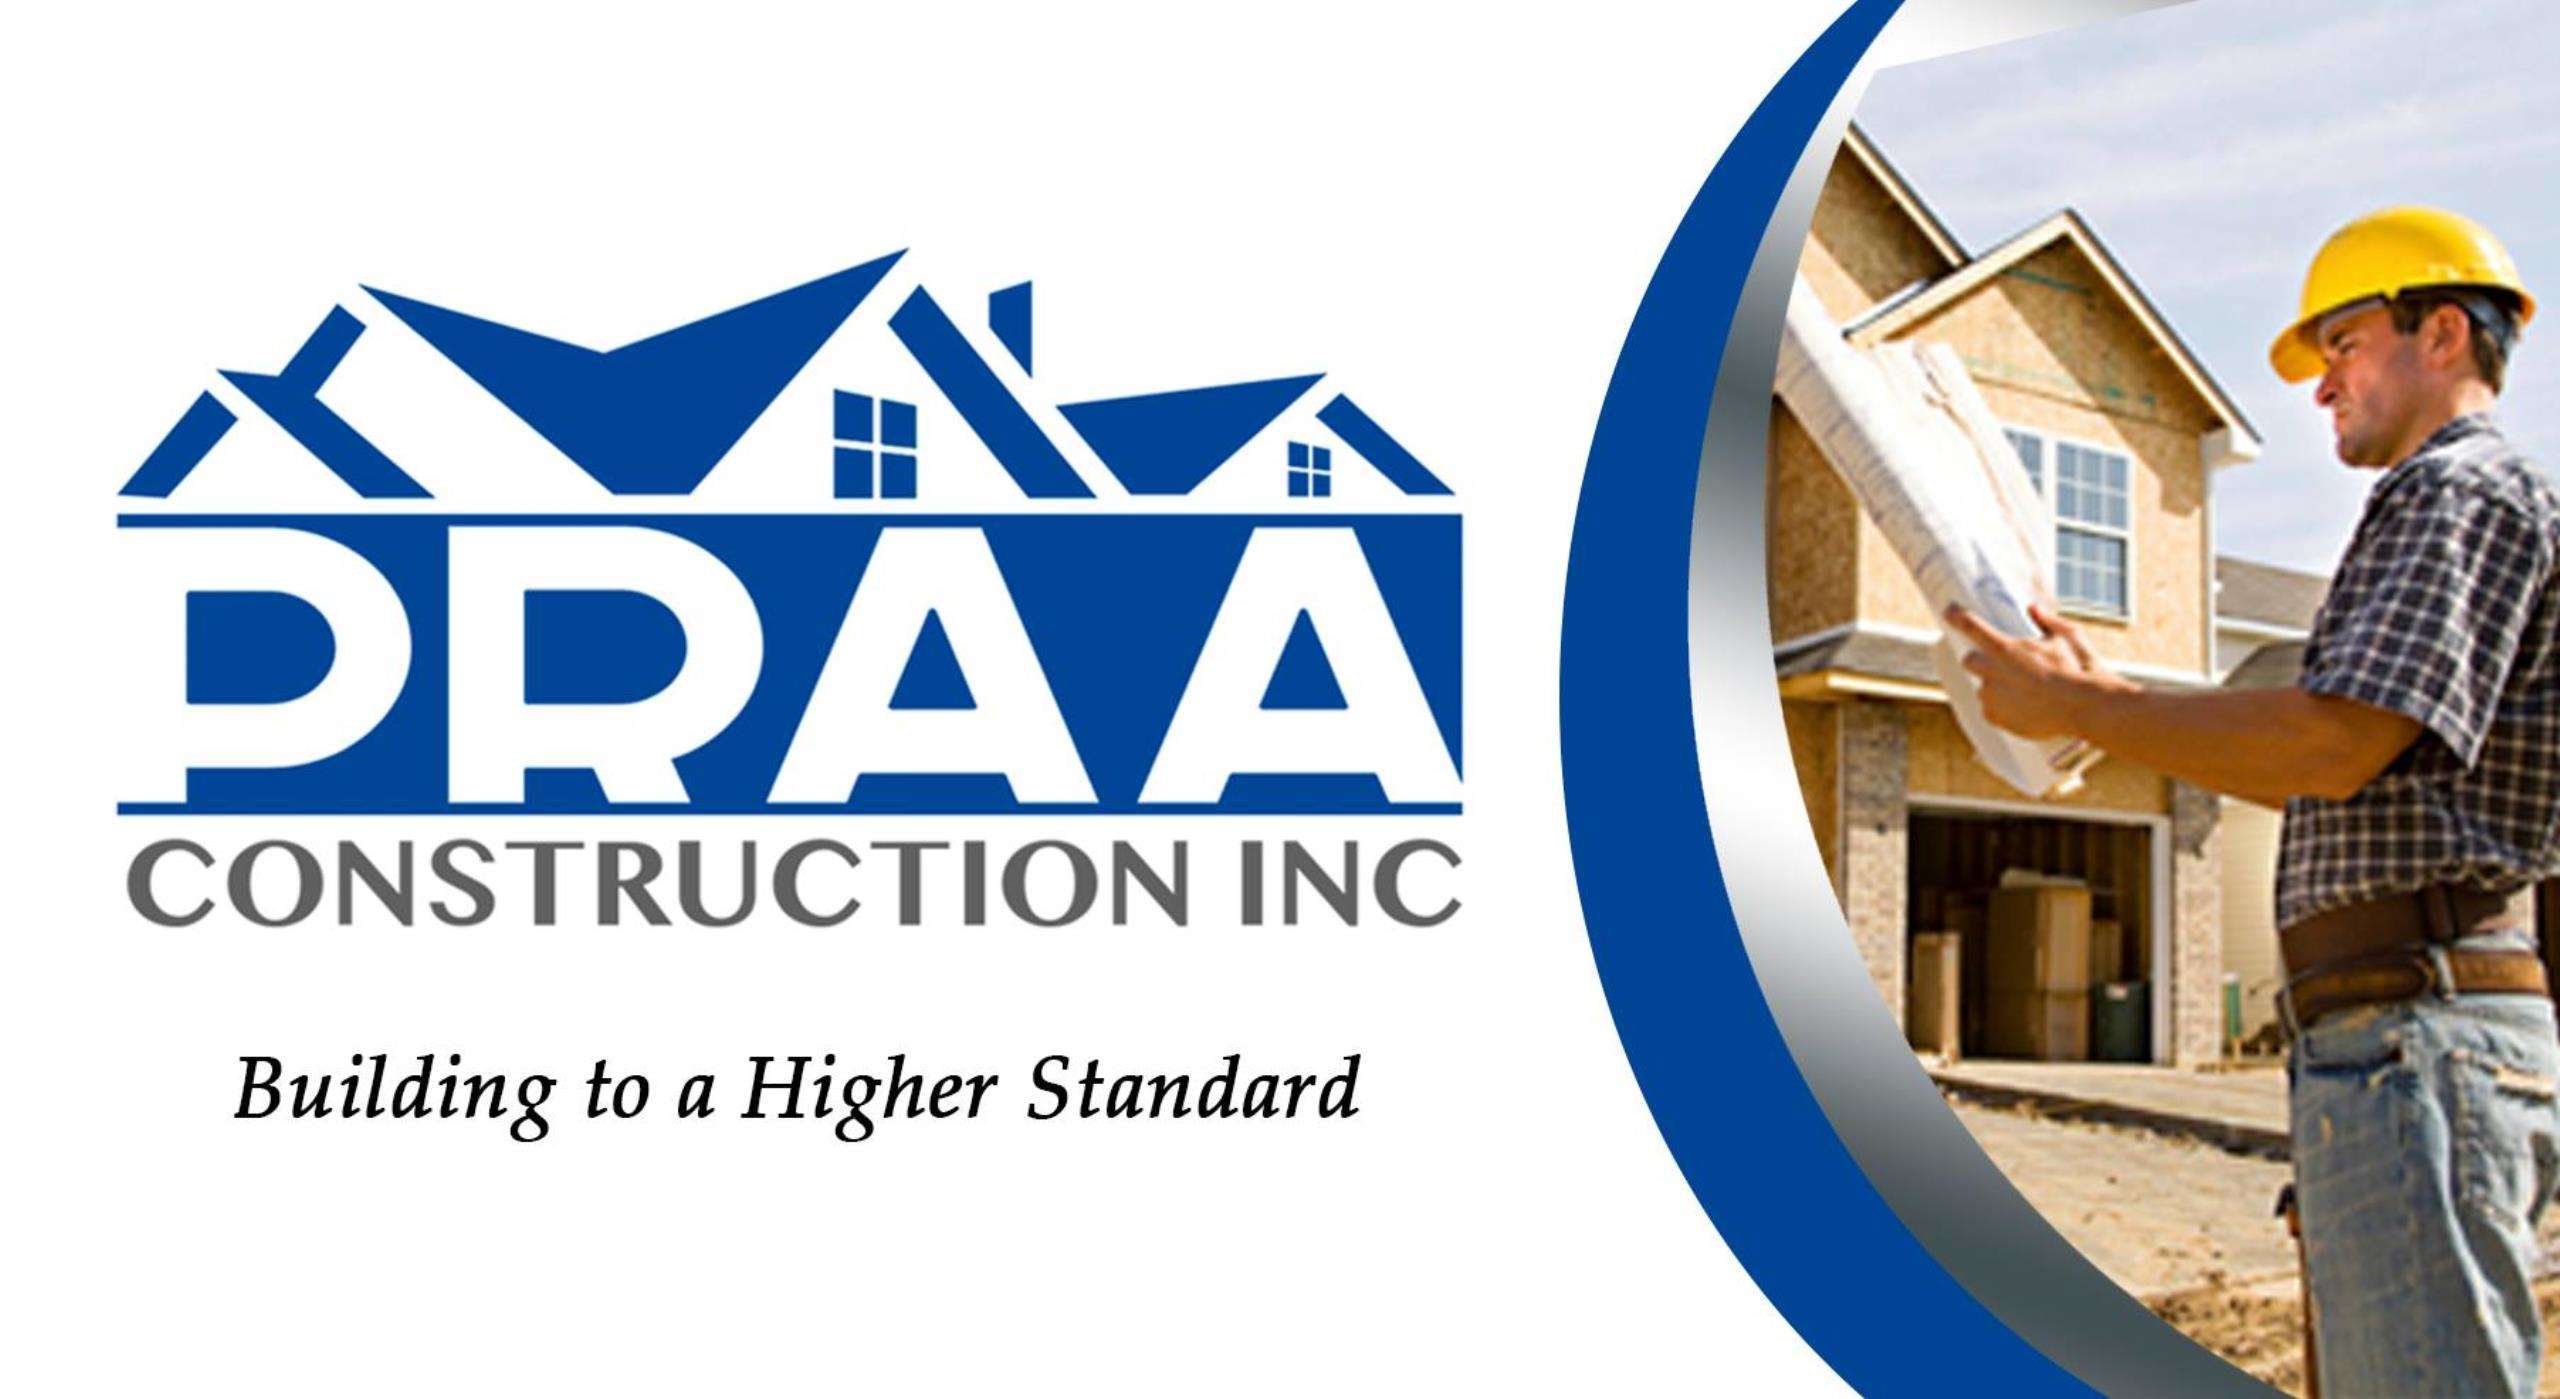 Praa Construction, Inc. Logo